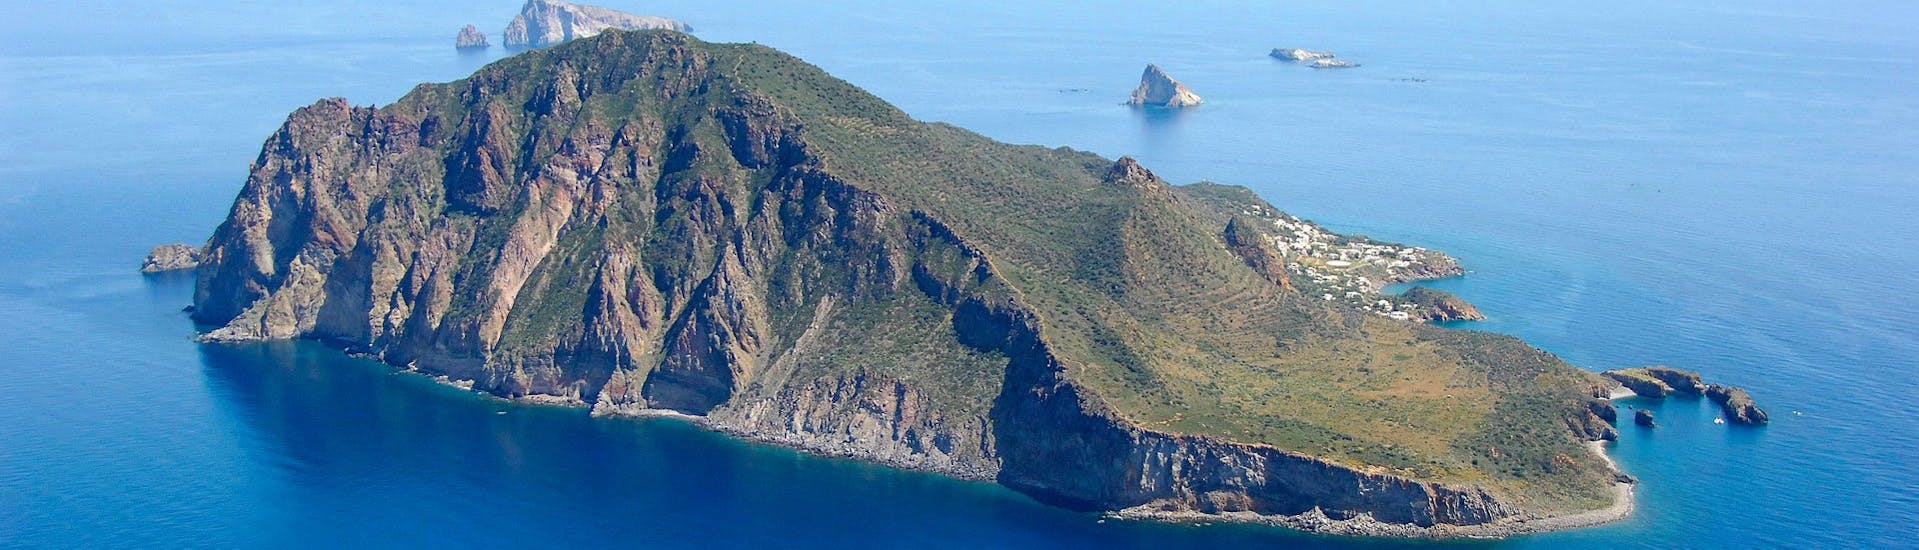 Picture of Panarea Island.